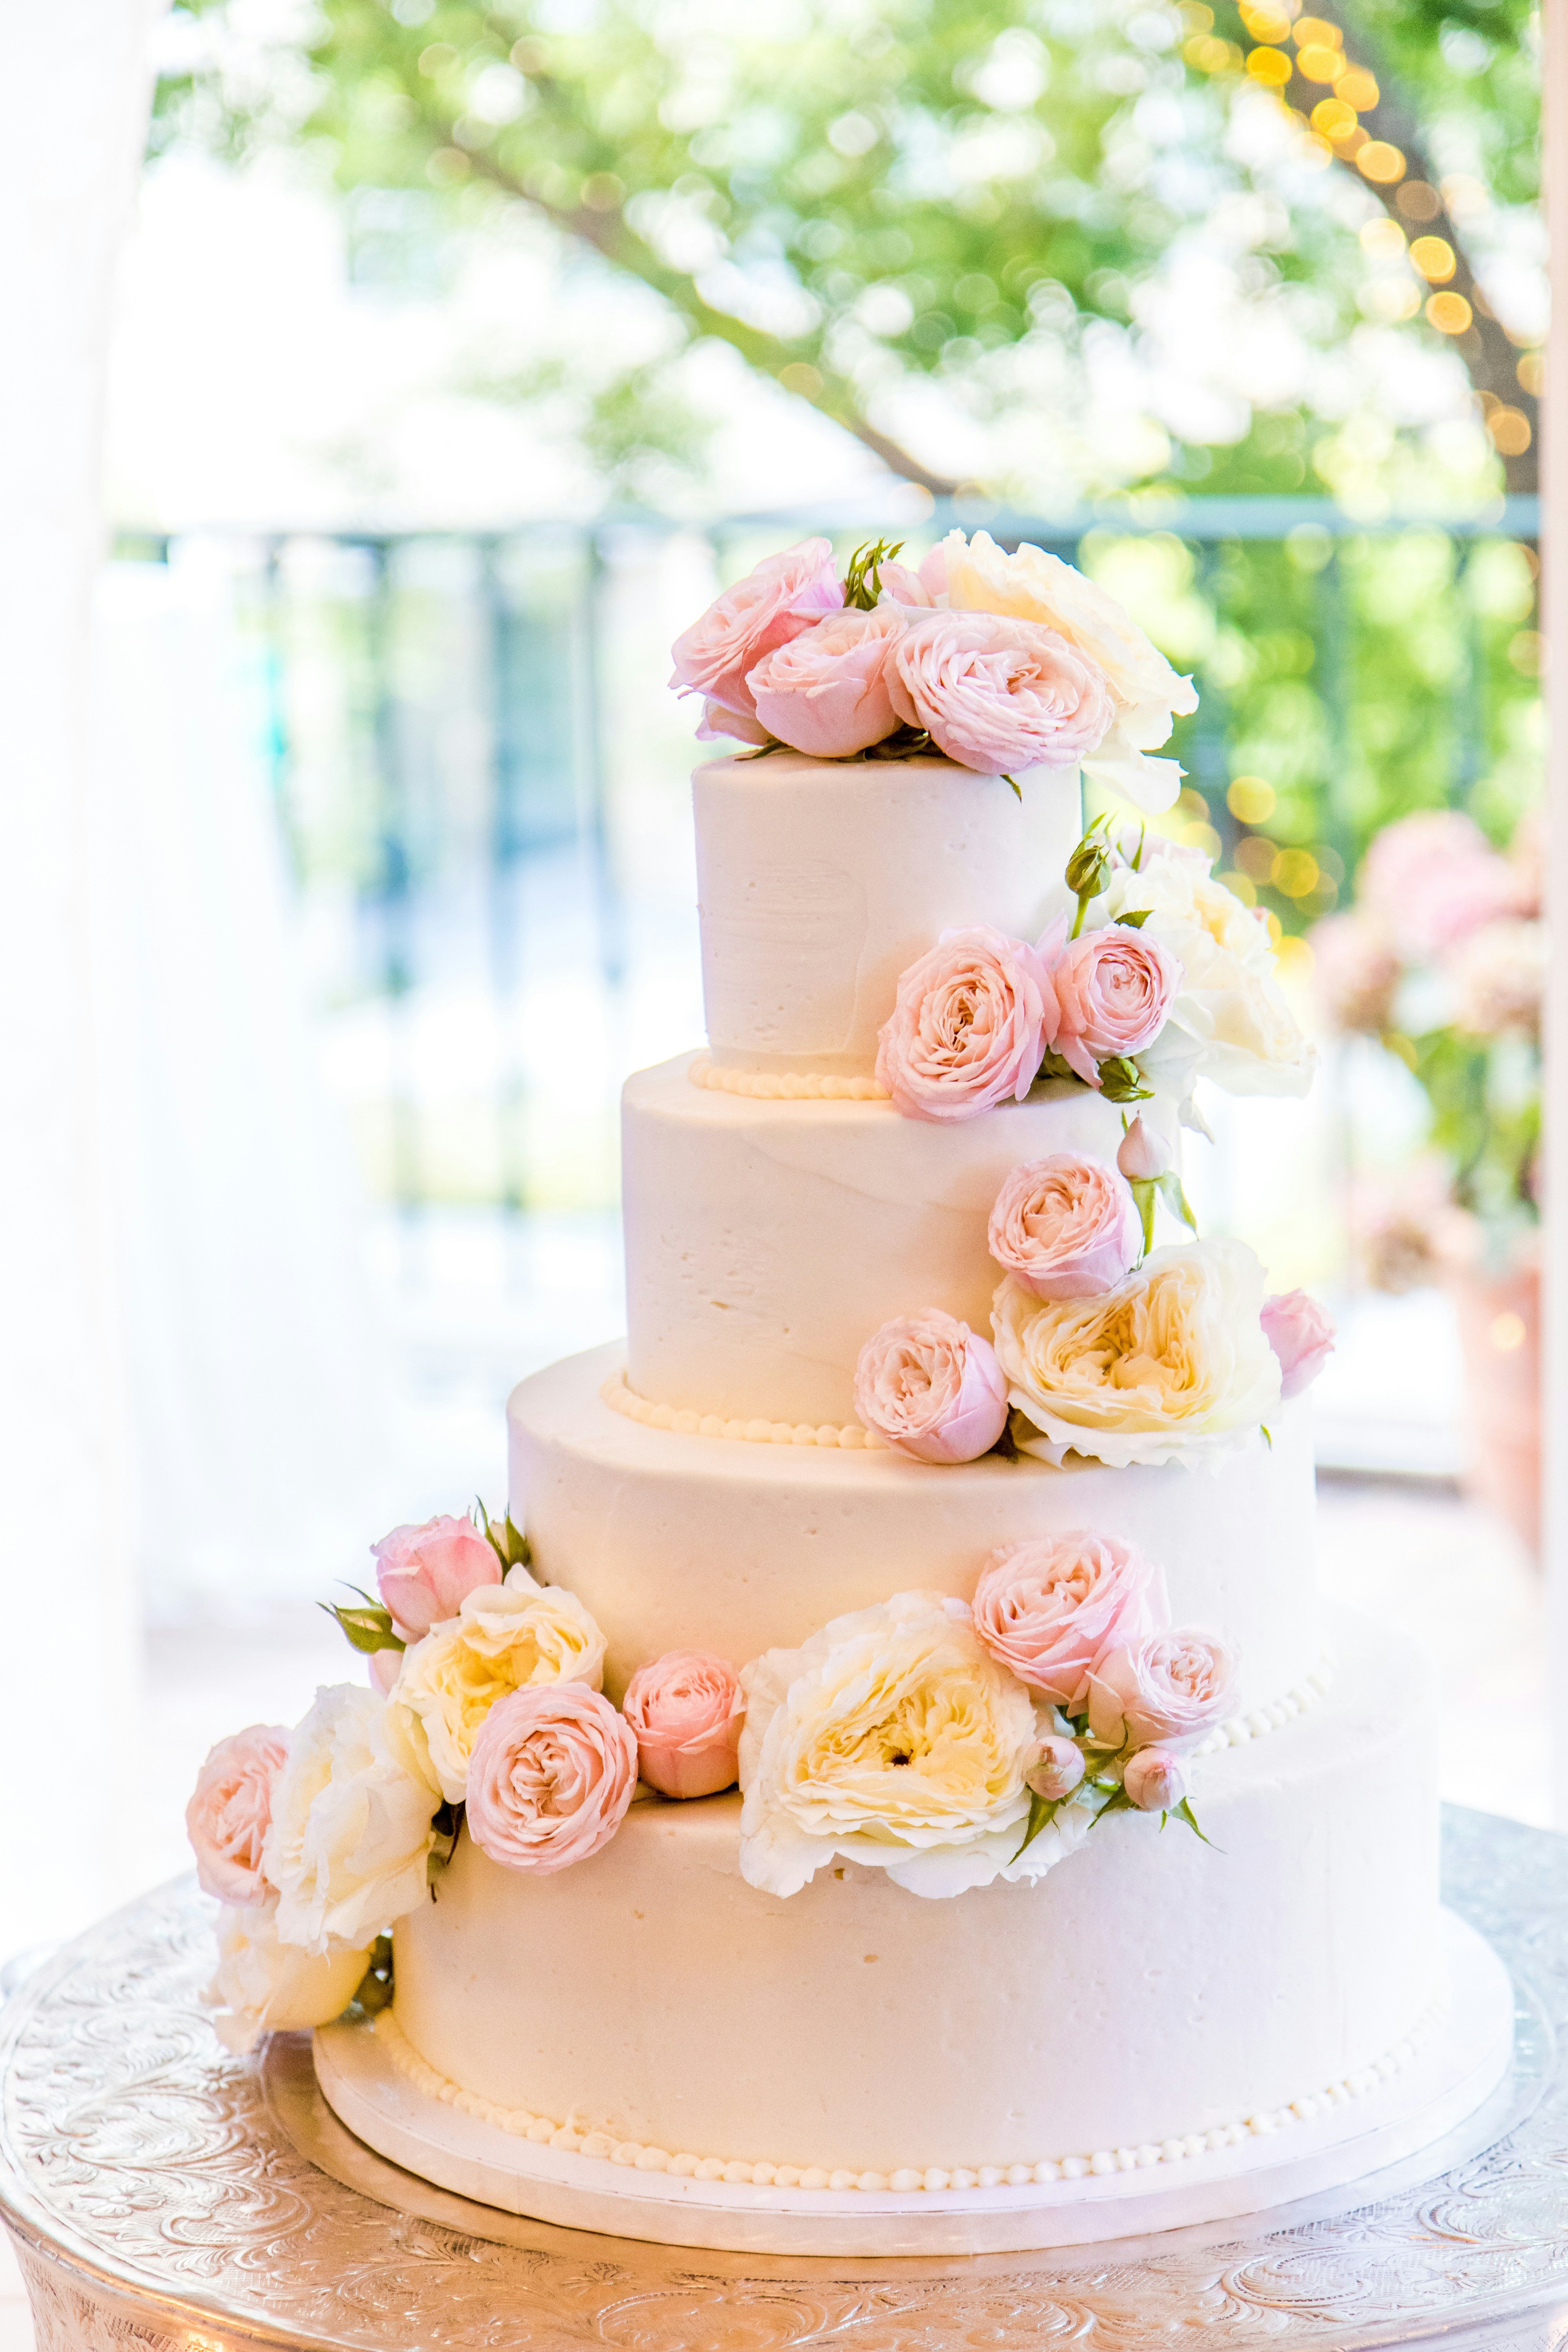 Wedding cake design pro free download